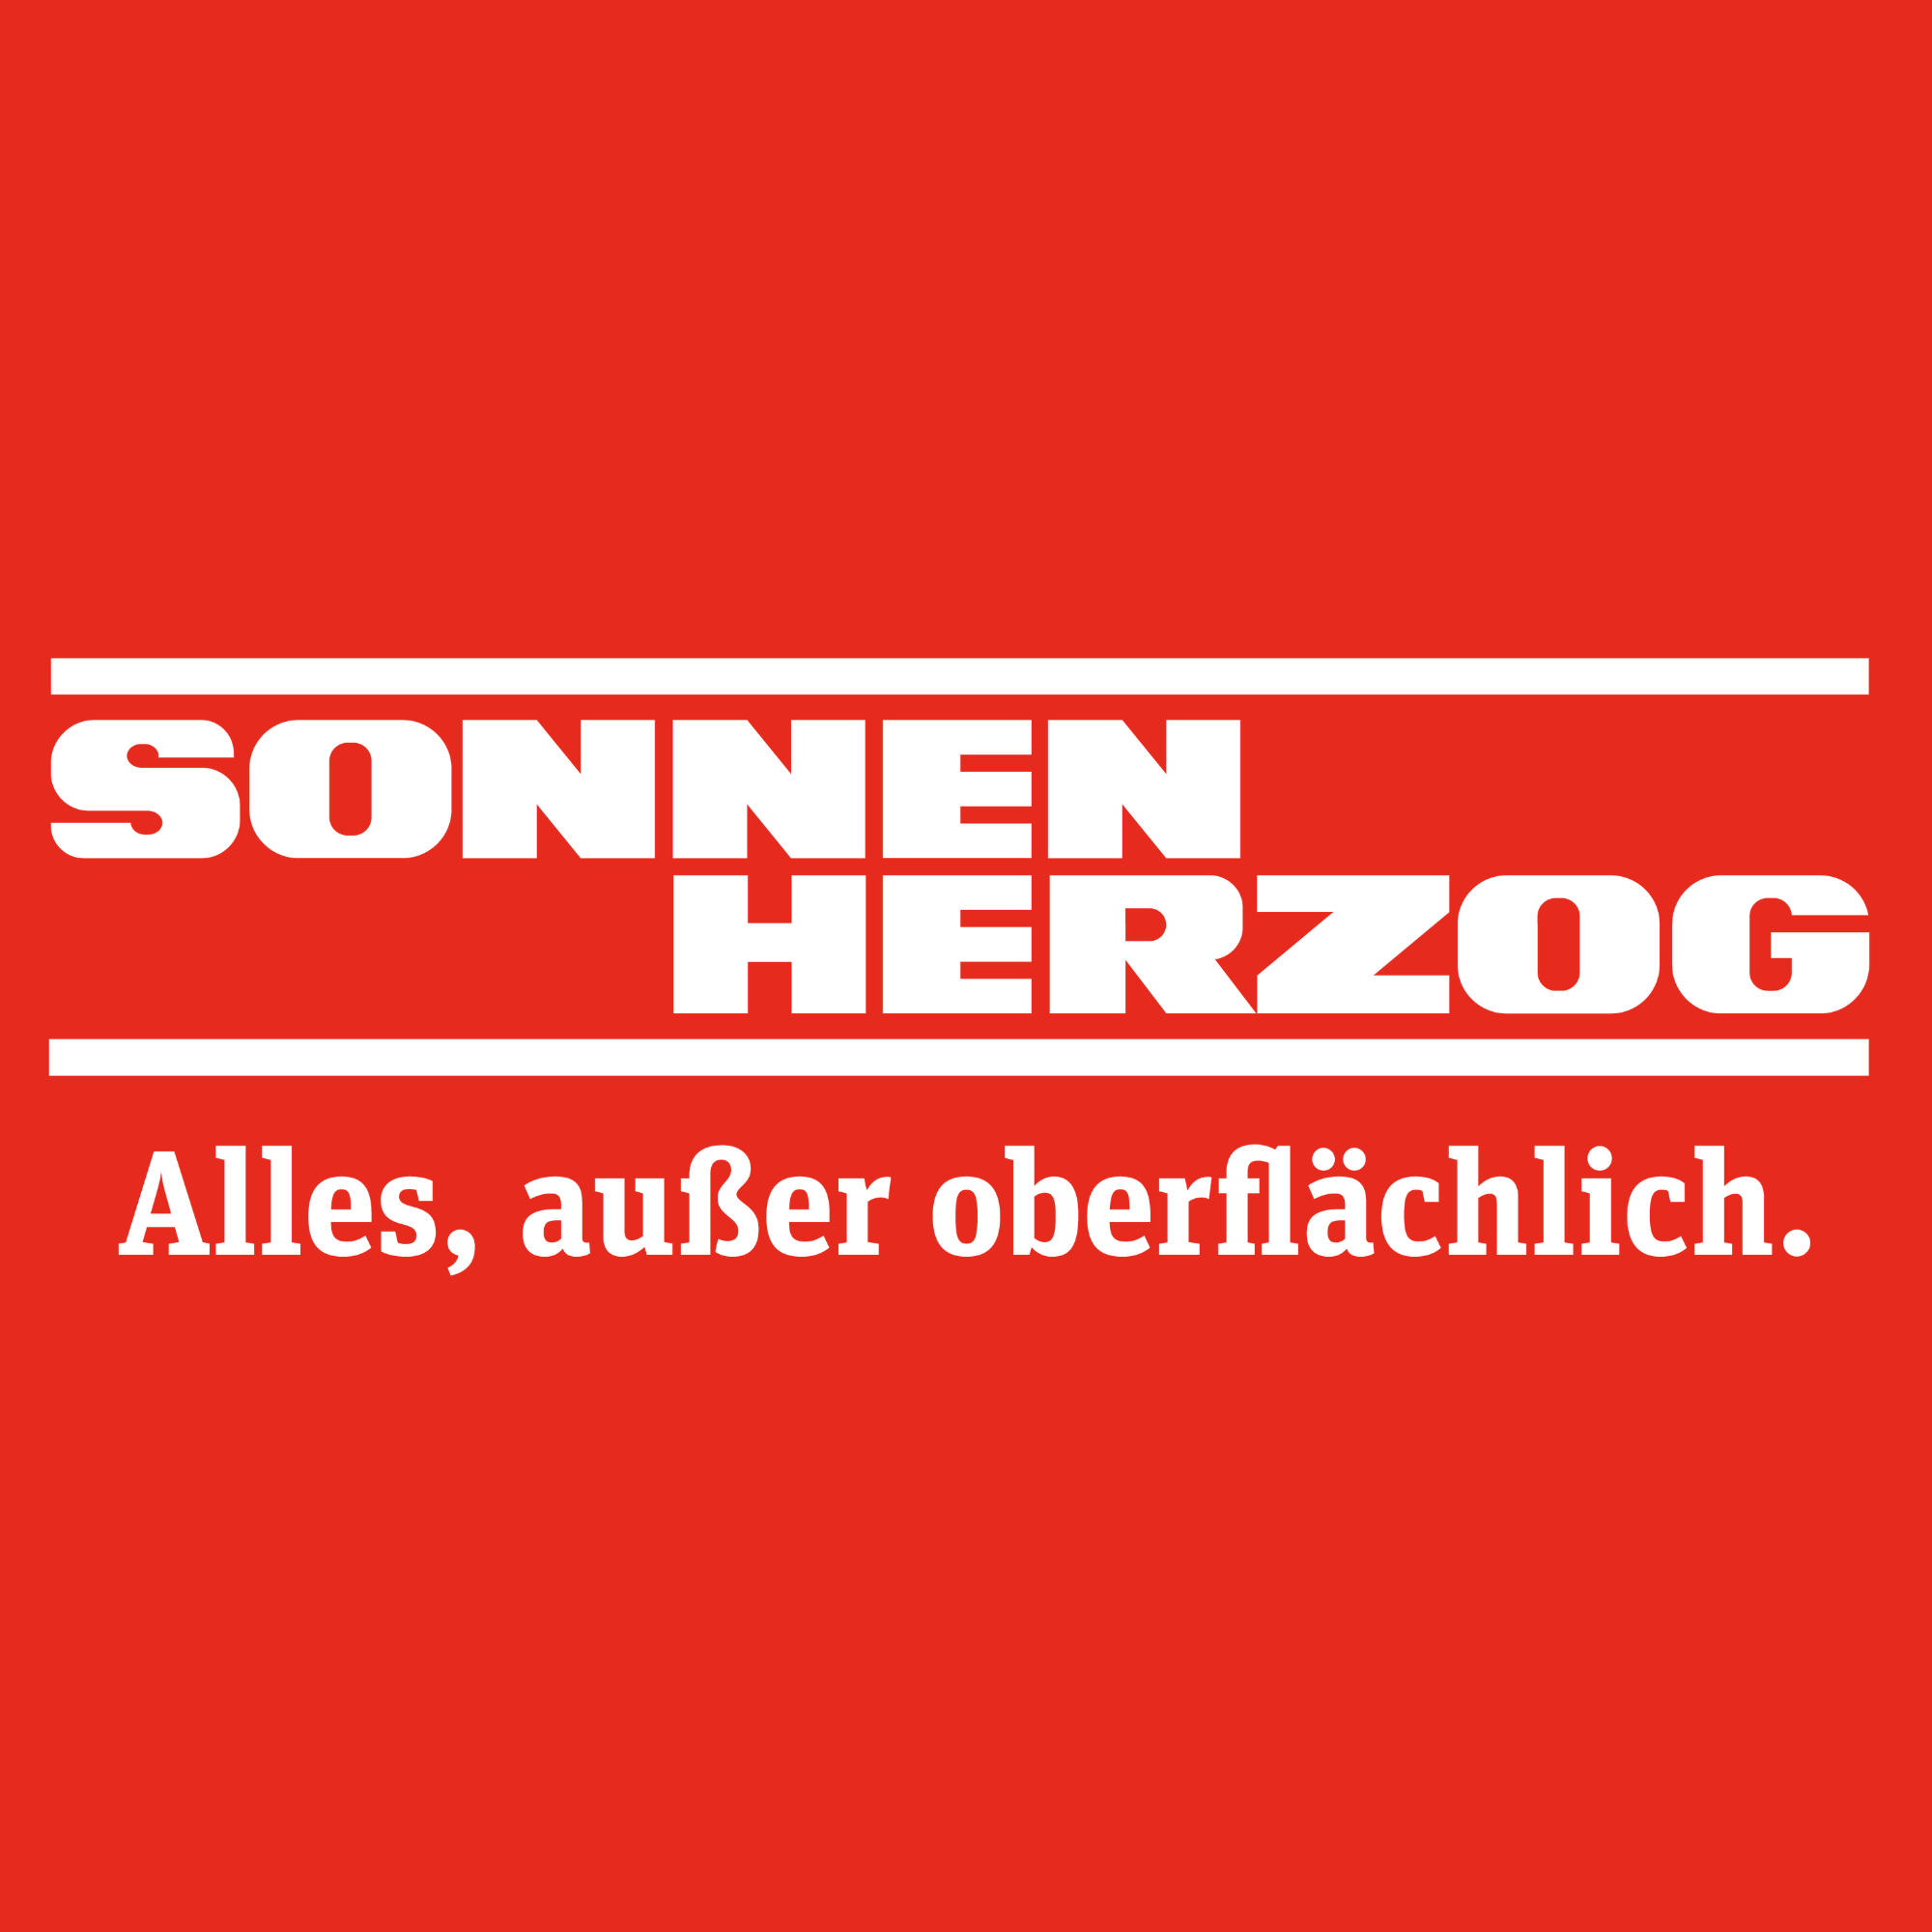 Sonnen Herzog ist ein inhabergeführtes Großhandelsunternehmen für Farben, Tapeten, Bodenbeläge, Werkzeuge und Wärmedämmung in Nordrhein-Westfalen. Mit kompetenter Beratung, Services wie wir sie uns selbst wünschen würden und Leistungen wie Farbmisch-, Mie